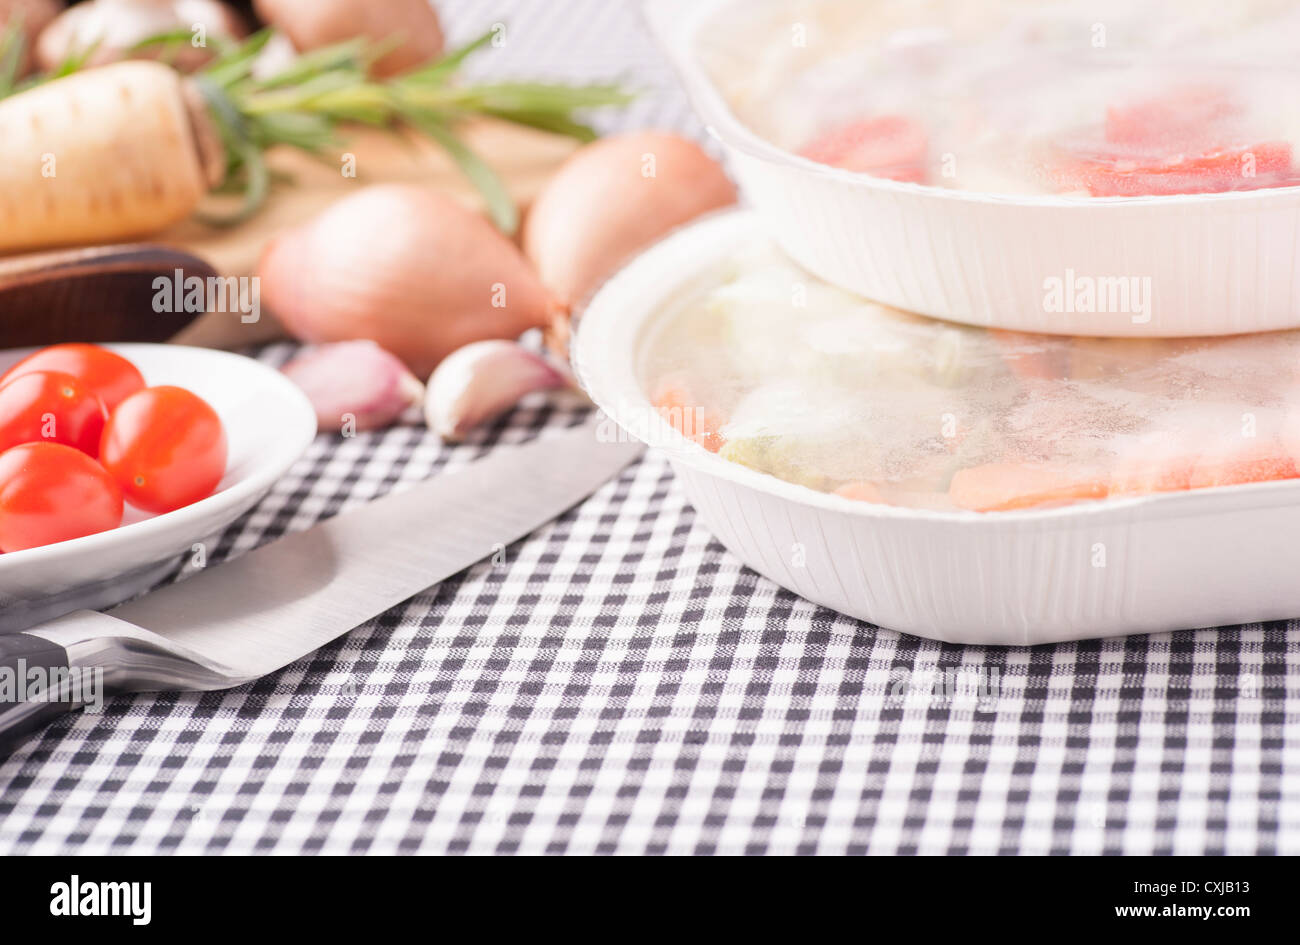 Kontrastierende Essen, Wahl zwischen frischem gesunden Gemüse und Mikrowellen-Mahlzeit Stockfoto